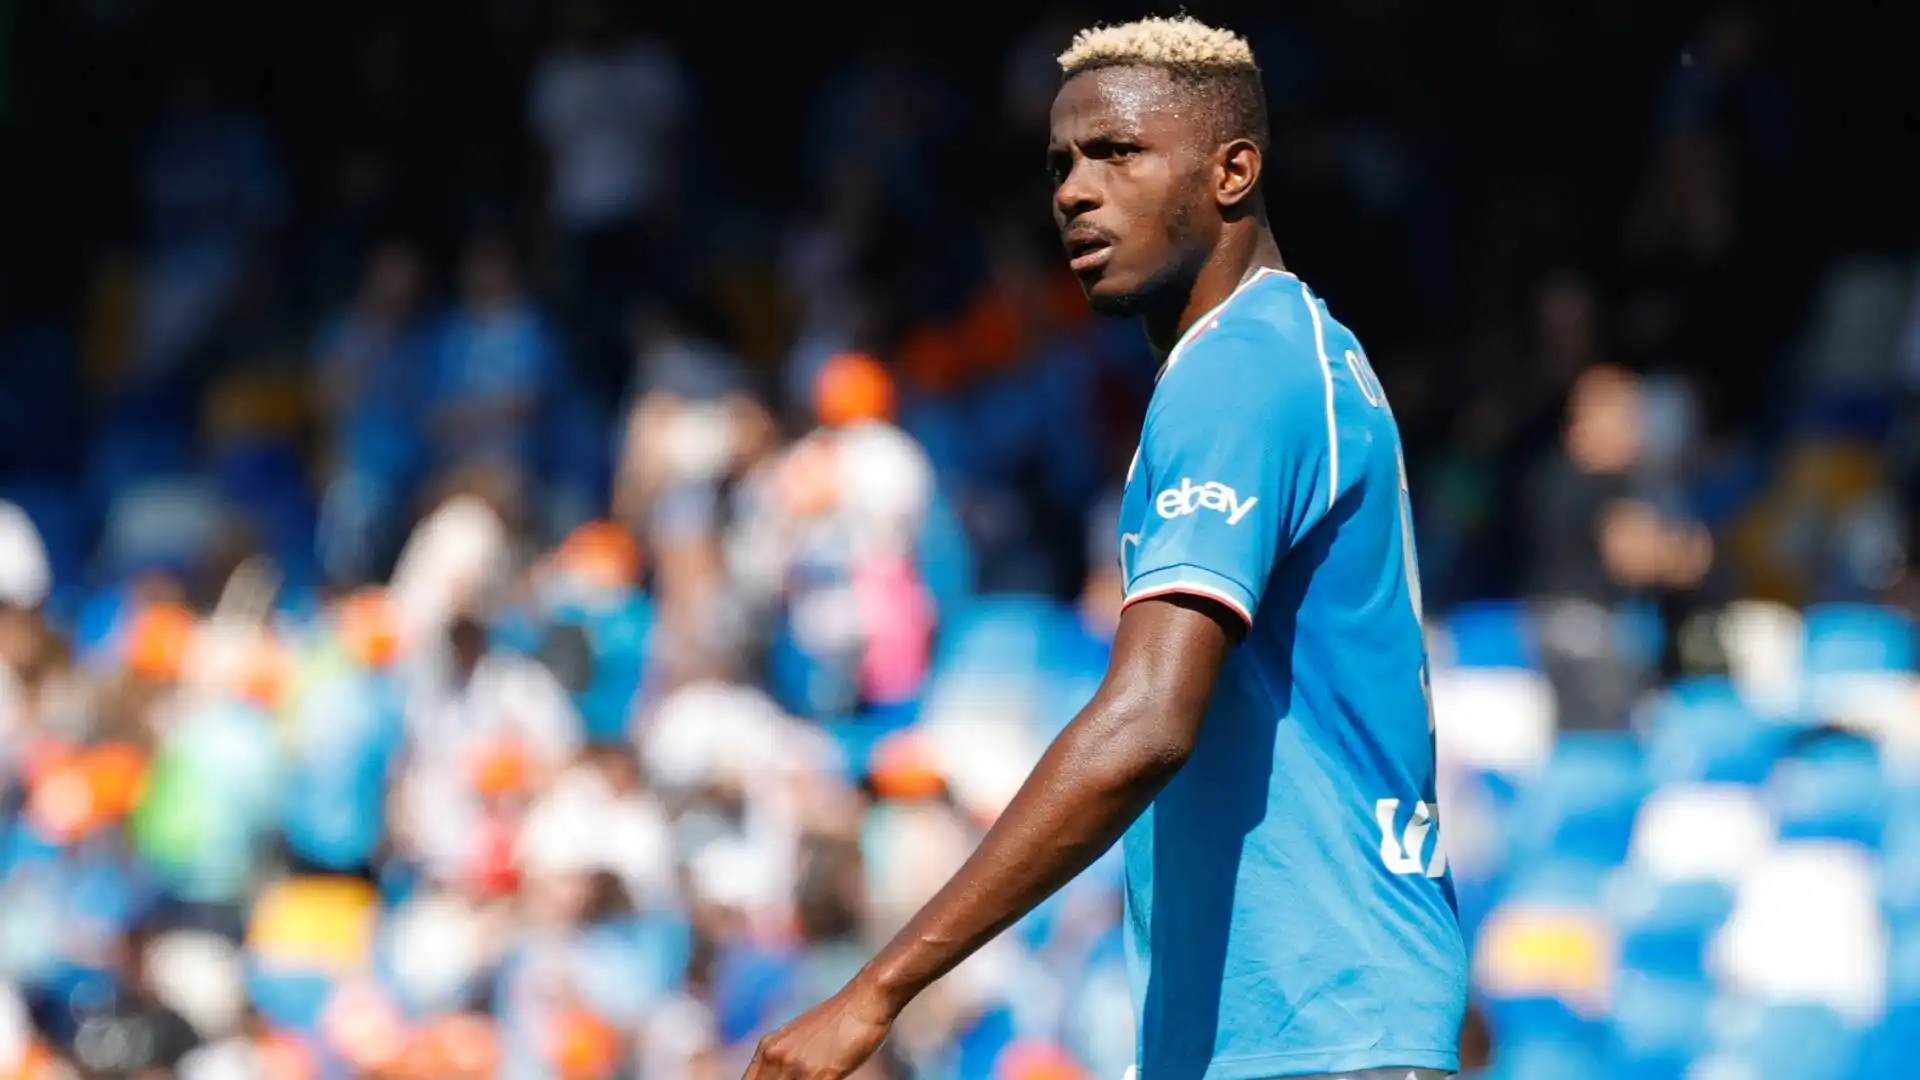 Il nigeriano con ogni probabilità lascerà Napoli: sembra destinato alla Premier League